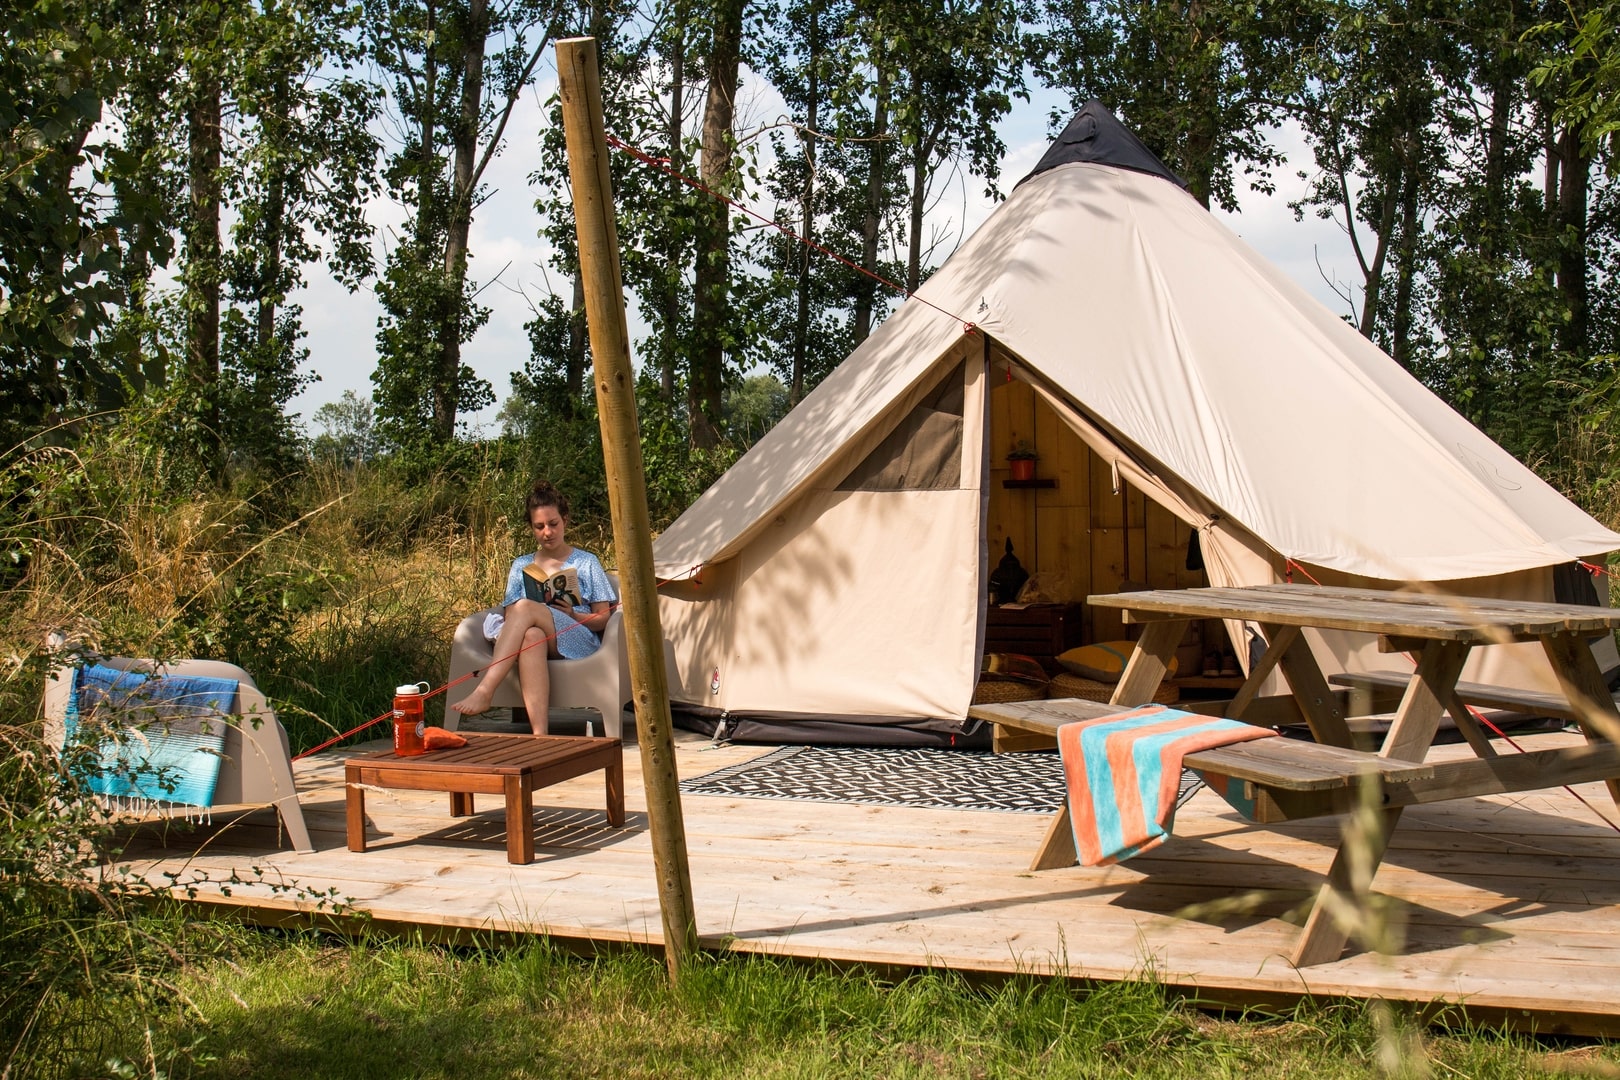 Vakantie ideeën Campspace Nederland